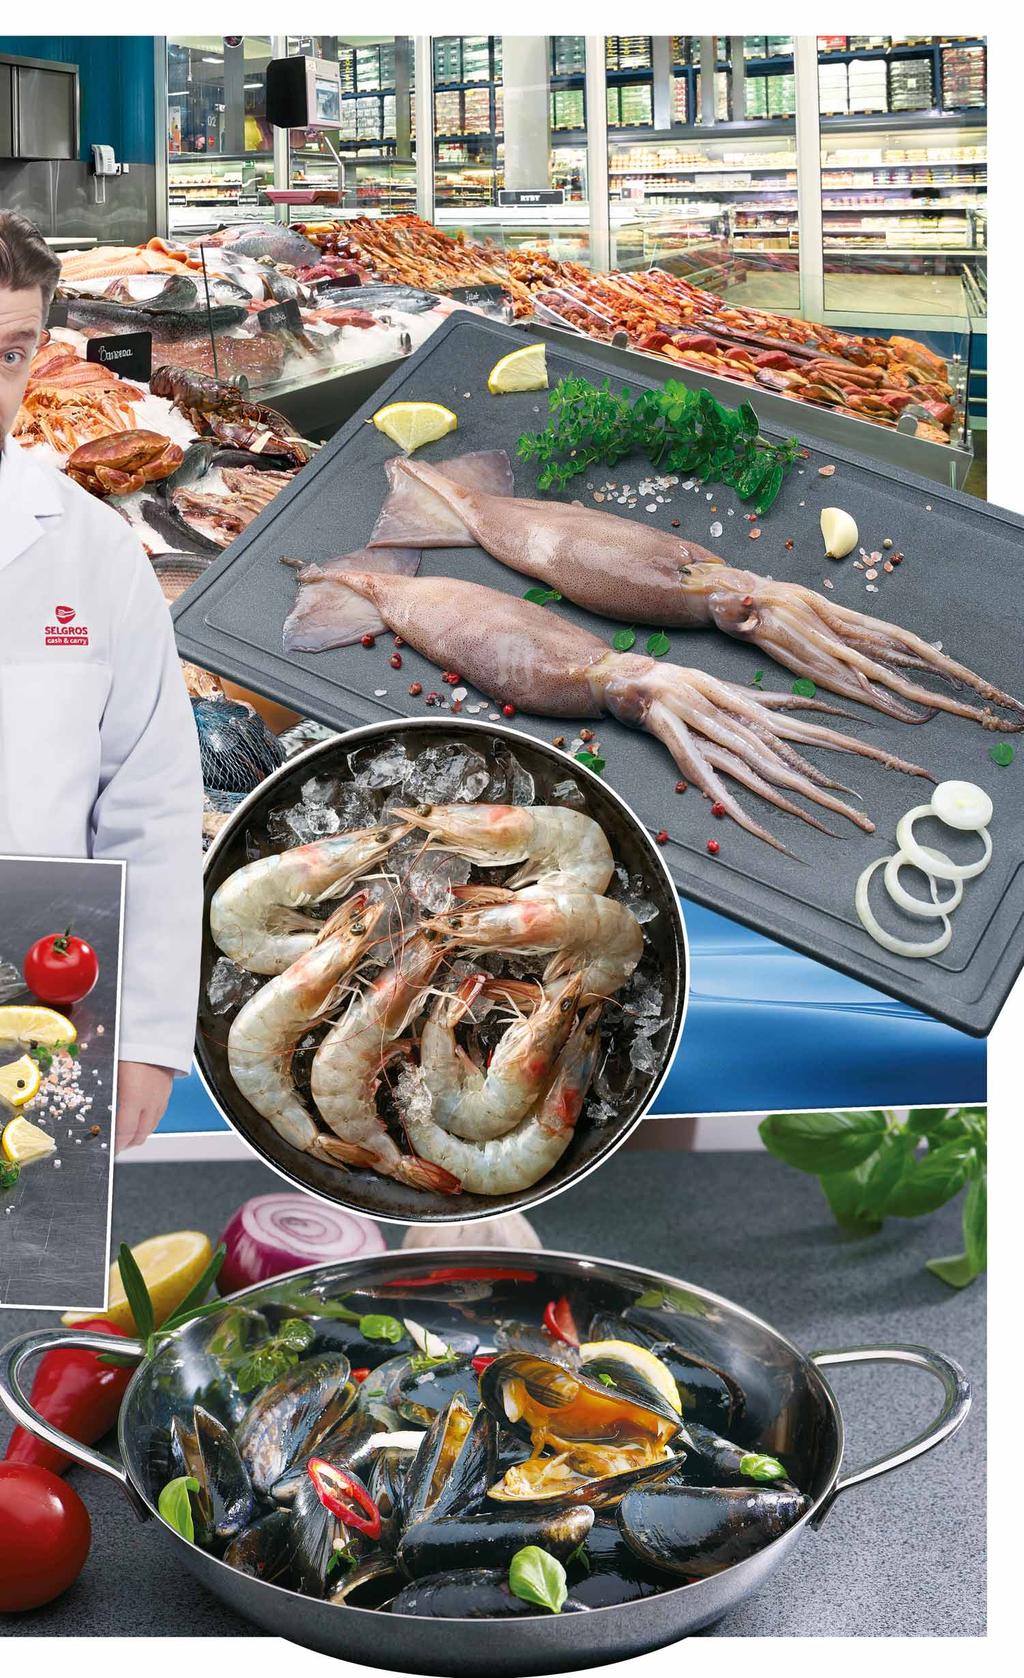 60 gatunków ryb świeżych 80 rodzajów ryb wędzonych 20 rodzajów owoców morza Zestawy sushi 34 99 z VAT 36.